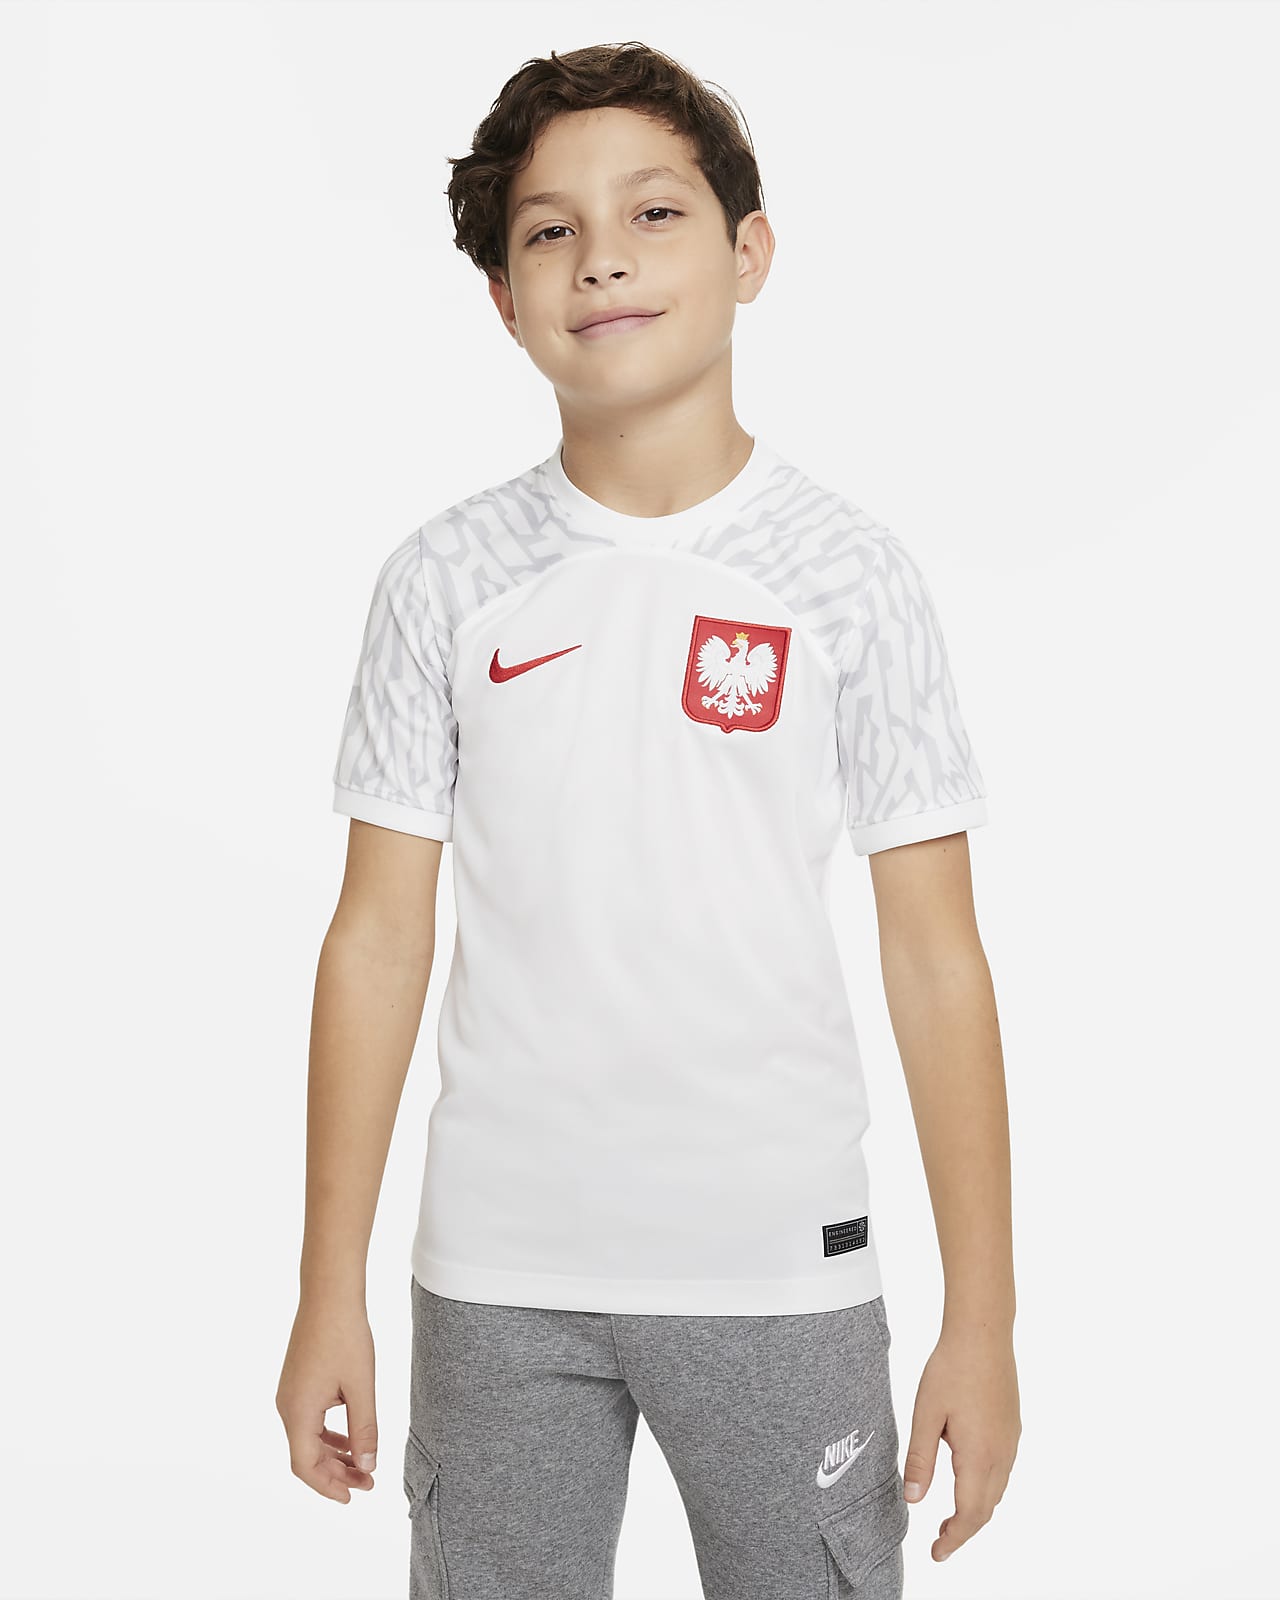 U.S. 2022/23 Stadium Home Big Kids' Nike Dri-FIT Soccer Shorts